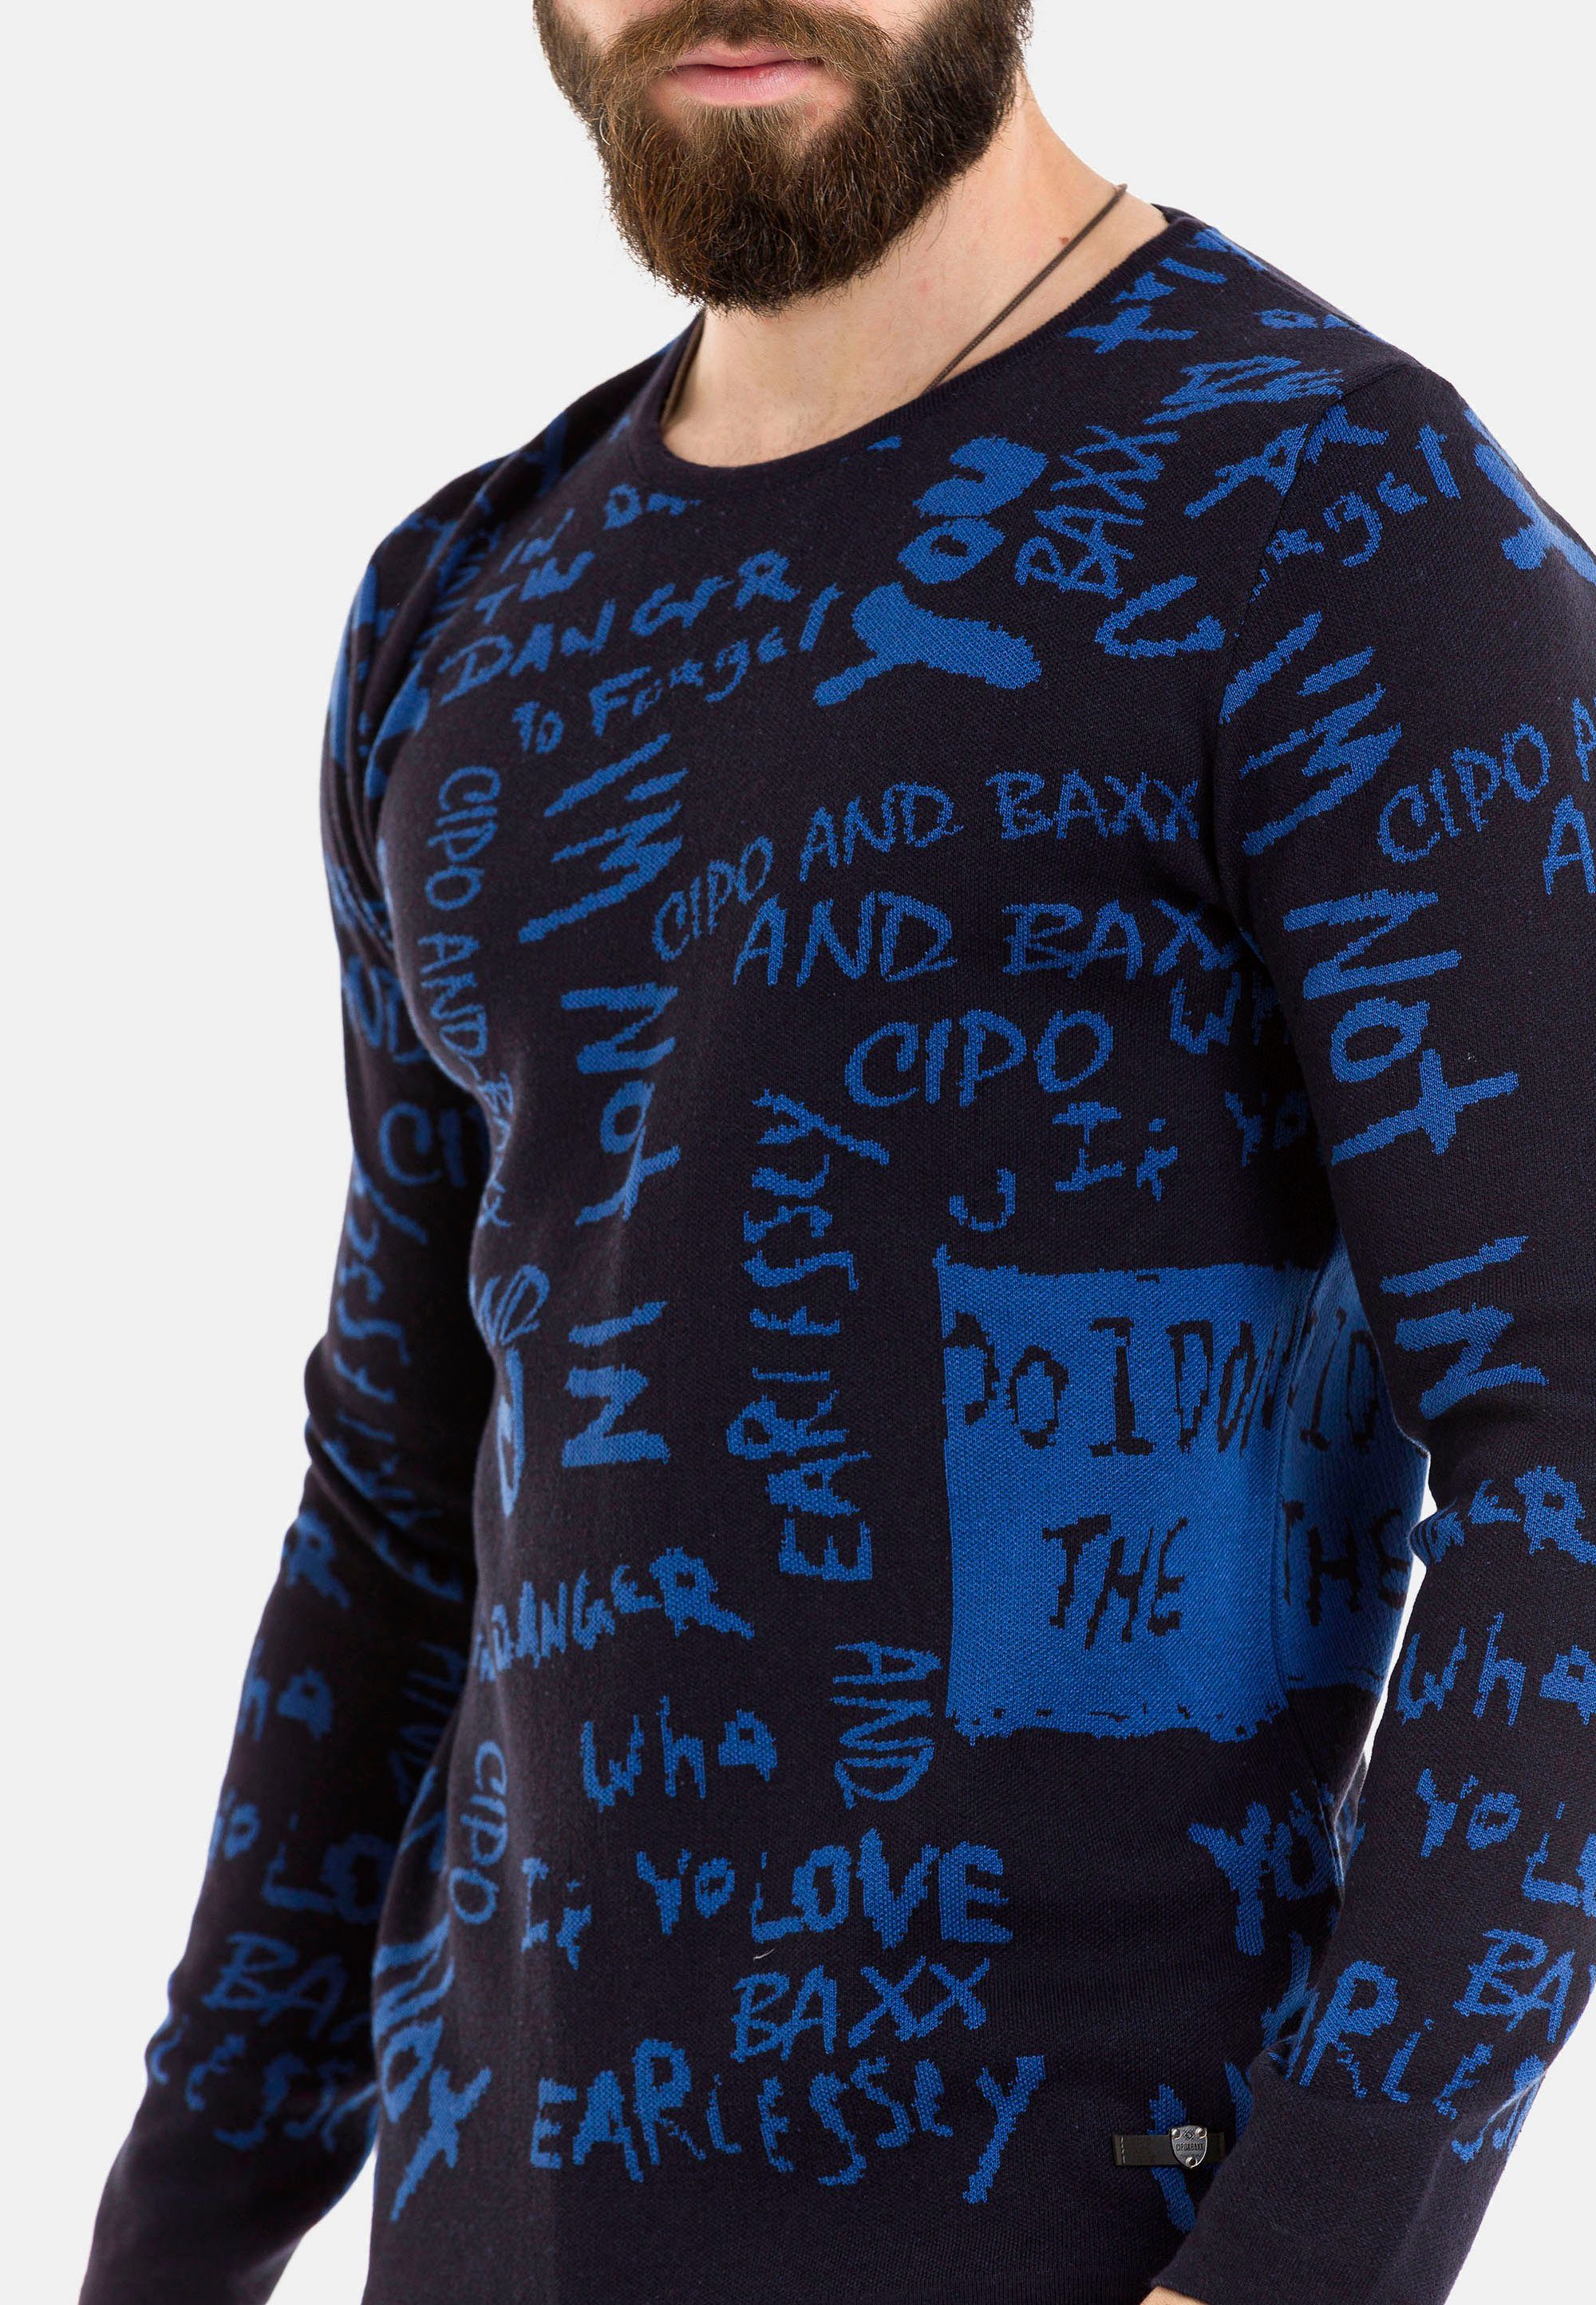 Strickpullover Schriftzug-Design & blau mit Cipo Baxx trendigem